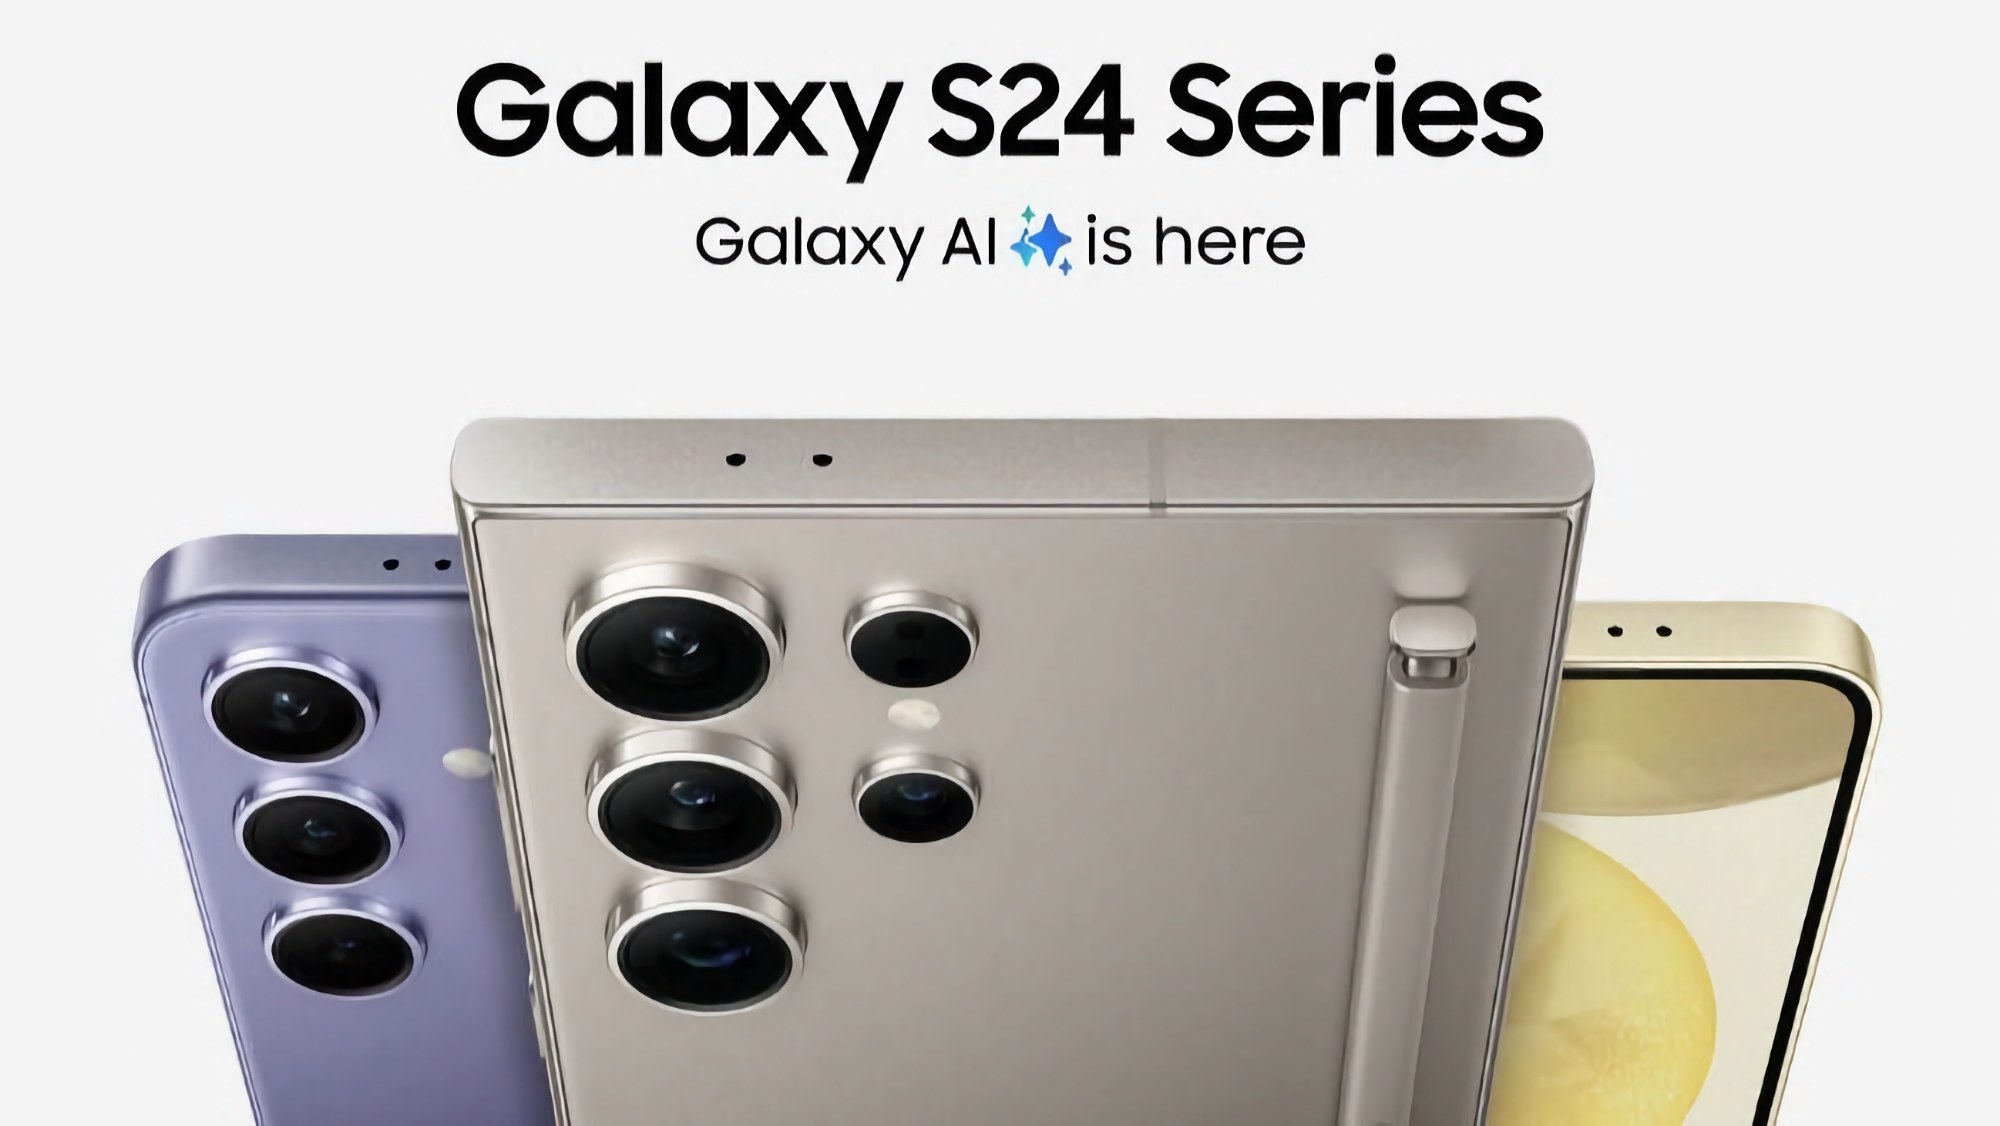 Samsung Galaxy S24, Galaxy S24+ e Galaxy S24 Ultra sono già disponibili per il pre-ordine su Amazon, con una eGift Card che offre uno sconto fino a 200 dollari.